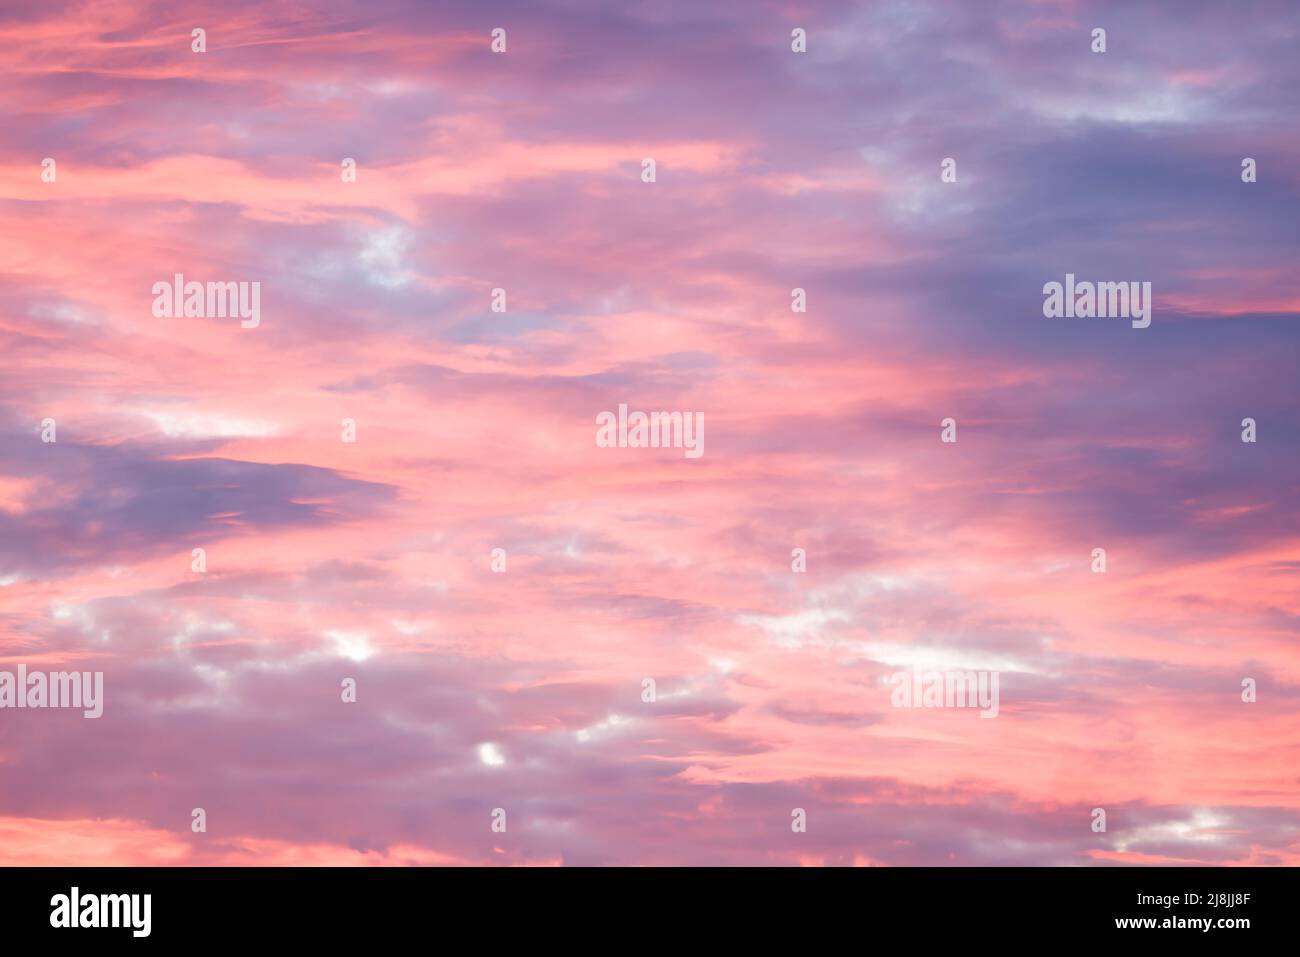 Ciel rouge spectaculaire au coucher du soleil avec nuages de tempête roses et bleus. Motif, texture ou arrière-plan de SkyScape, Royaume-Uni Banque D'Images